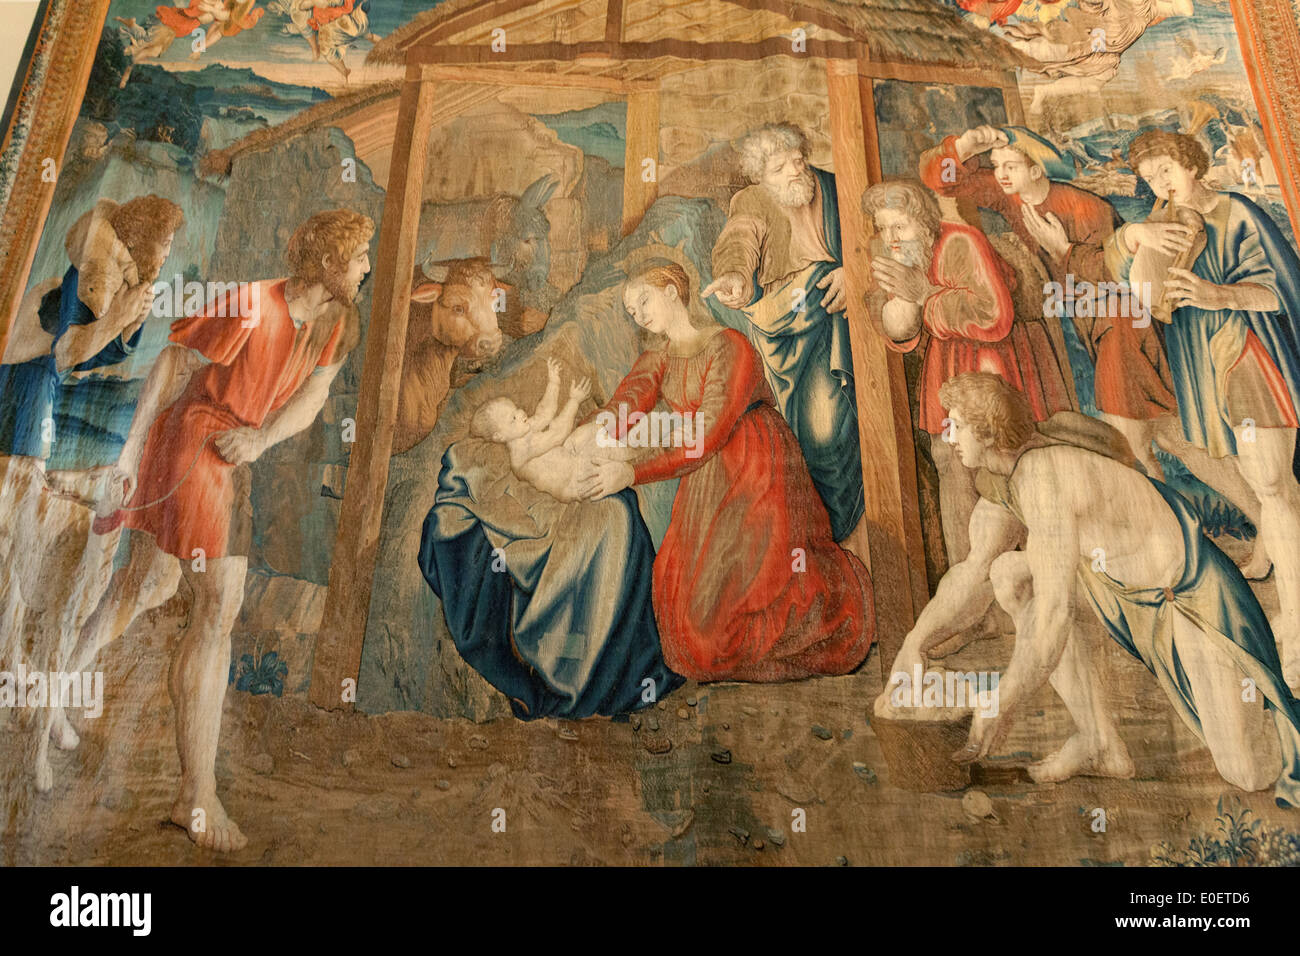 Tapisserie montrant la naissance de Jésus Christ, la galerie des tapisseries, Musées du Vatican, Vatican, Rome, Italie Banque D'Images